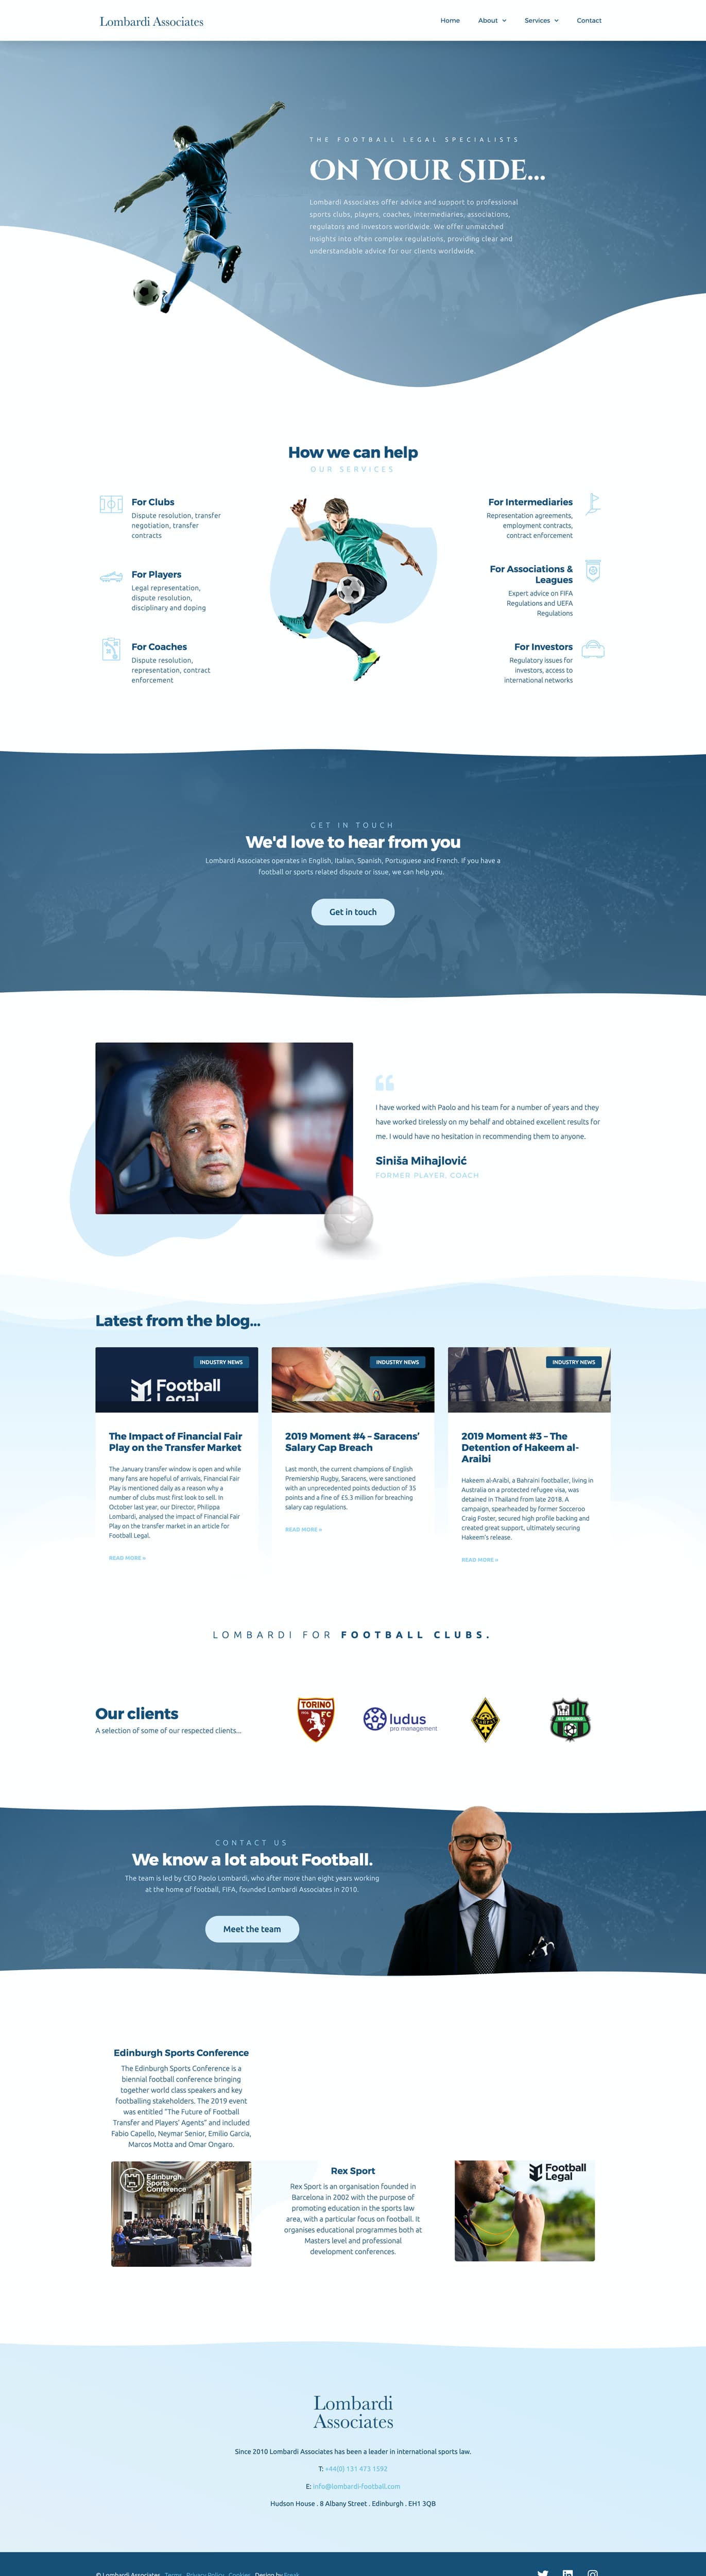 Lombardi Associates Website Design